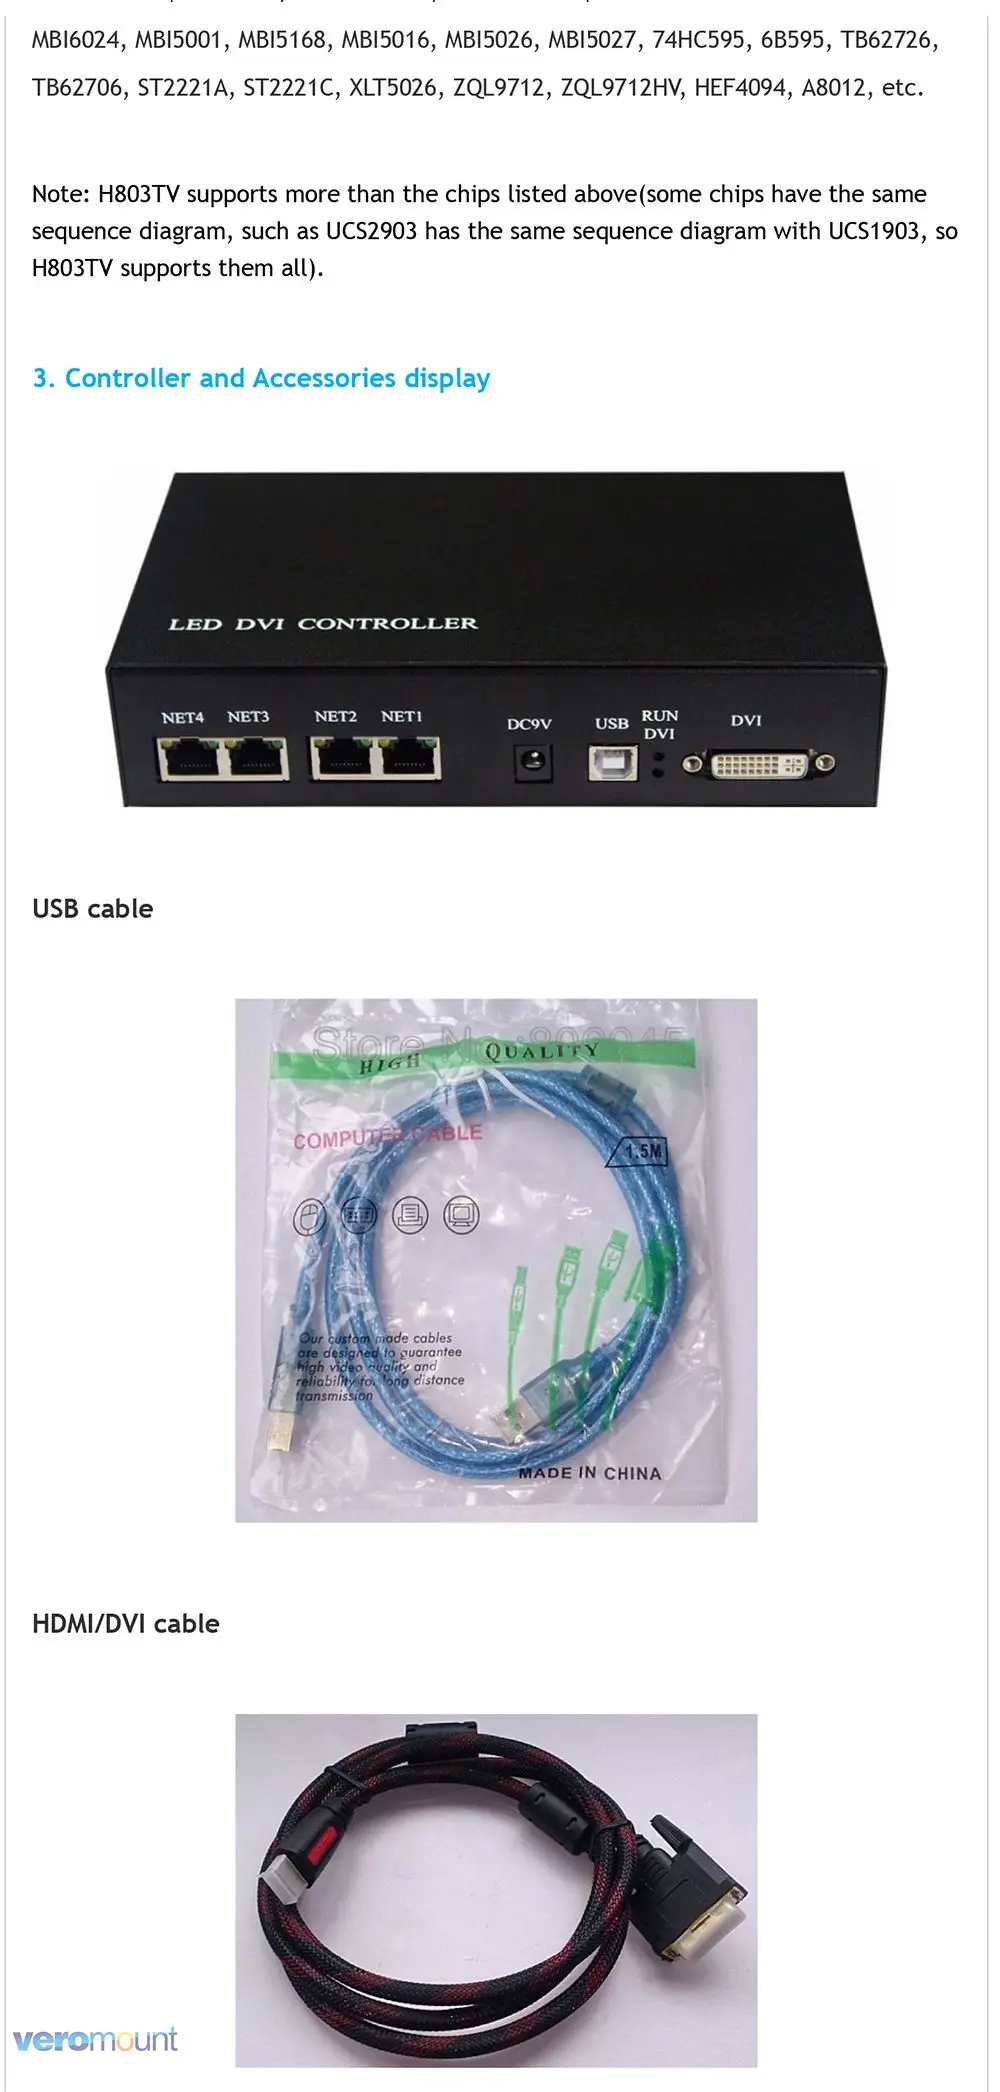 H803TV обновленный madrix DMX/SPI LIVE контроллер передачи данных компьютера или DVI на контроллер резервного заряда с led-дисплеем